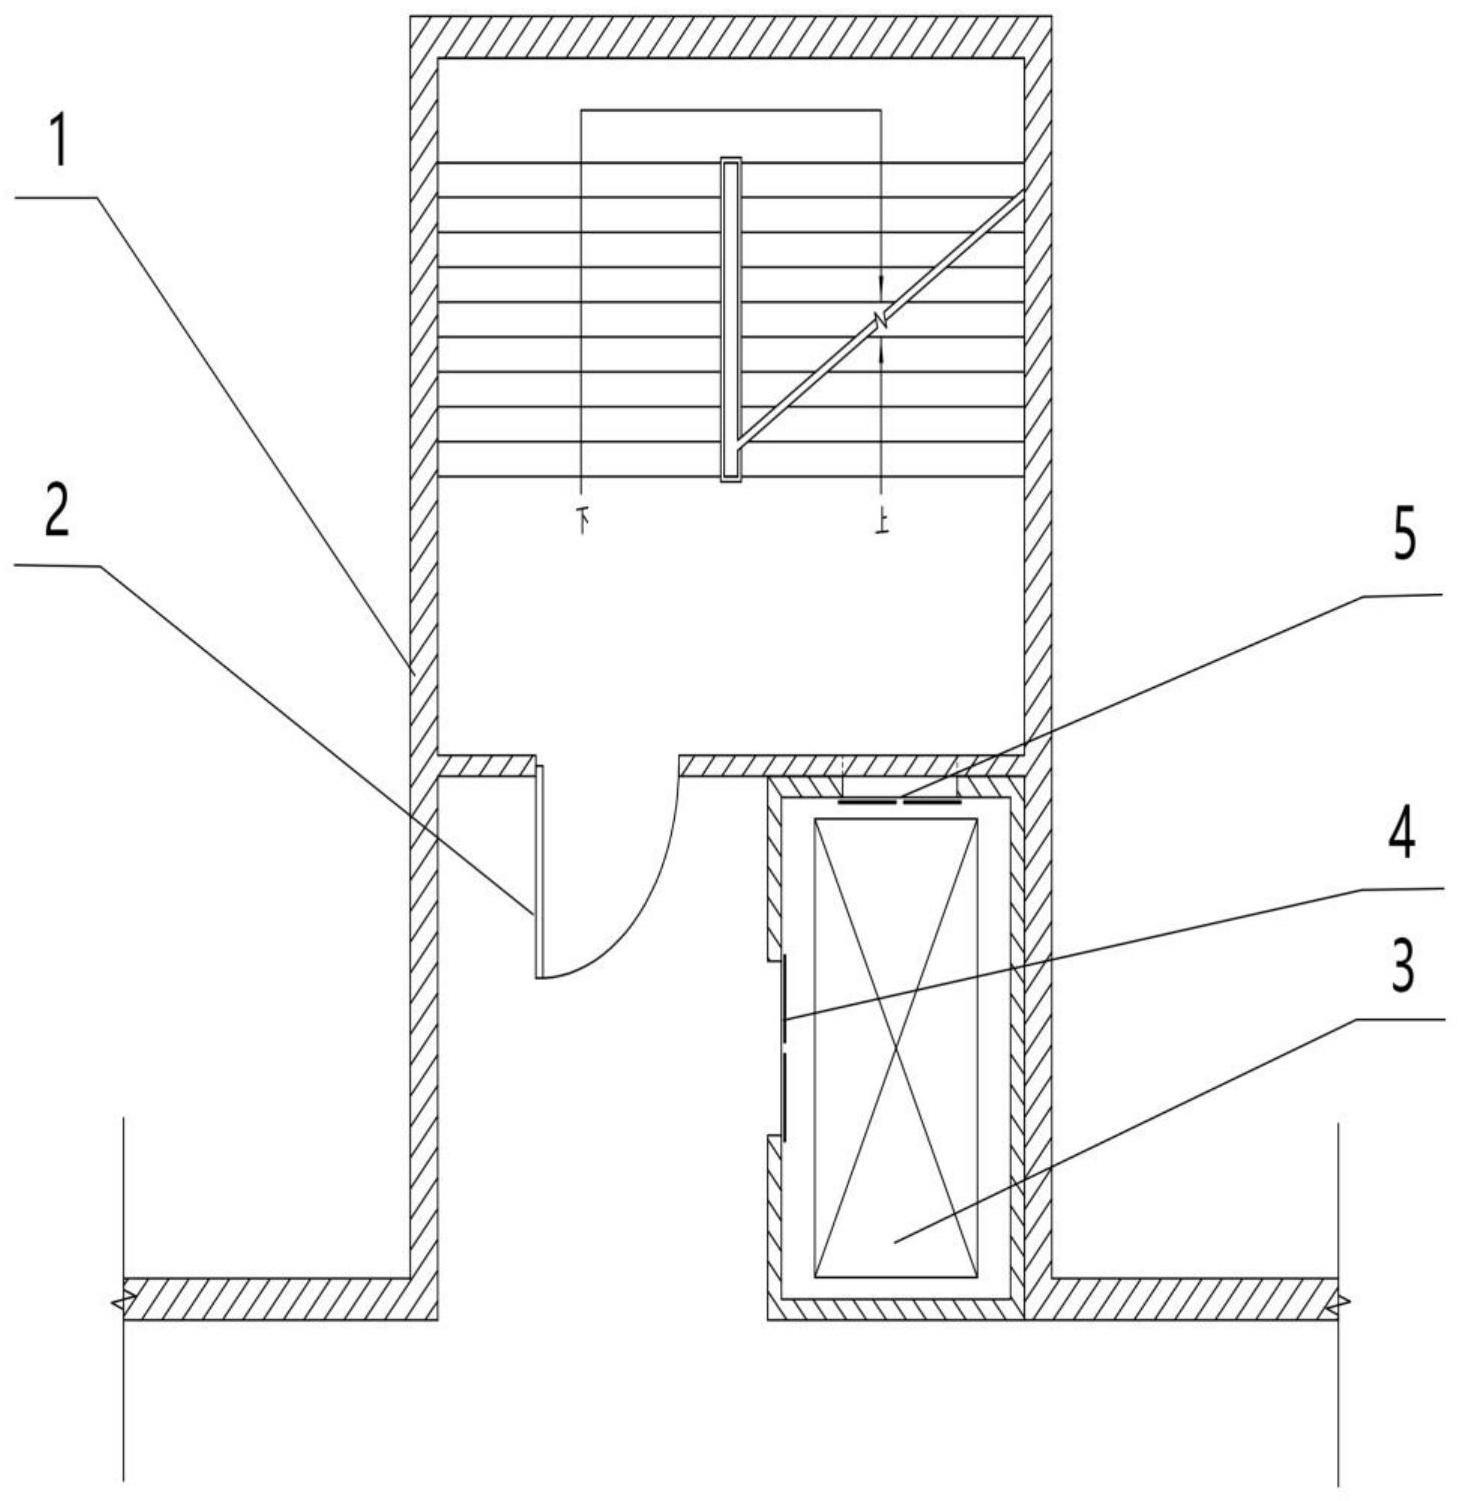 用于旧楼单元门口加装低空间占用的侧挂小型电梯的制作方法